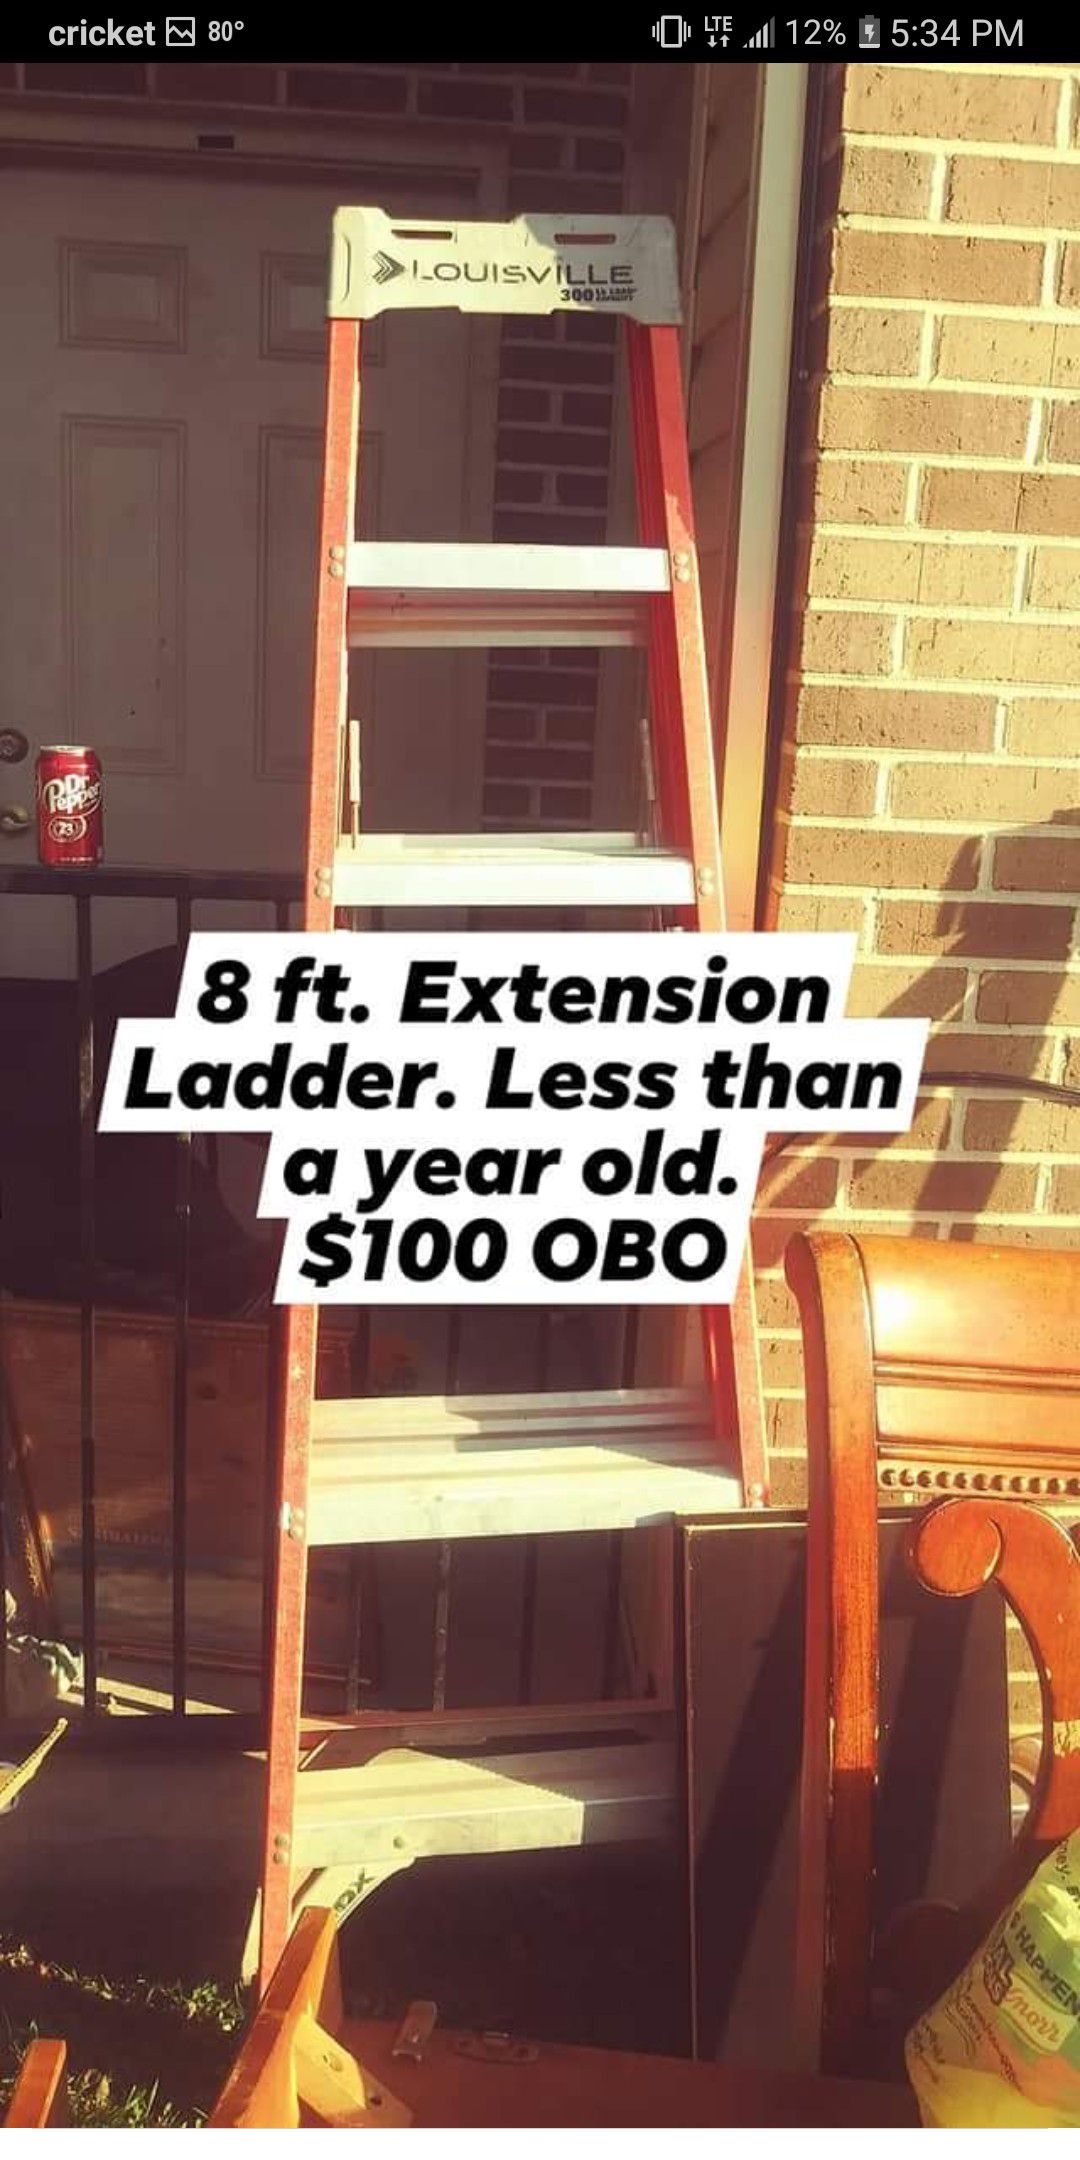 Louisville Extension ladder